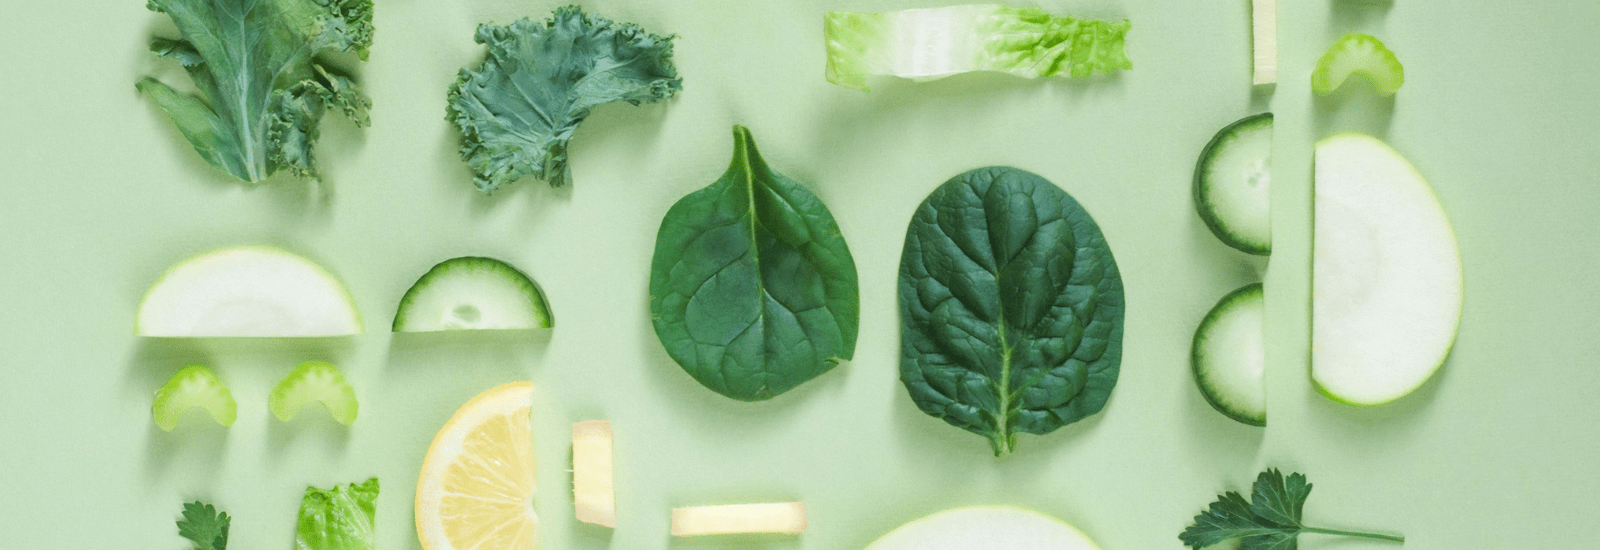 Groene bladgroenten en plakjes groenten op een groene achtergrond, waaronder boerenkool, spinazie, selderij, komkommer, en citroen.